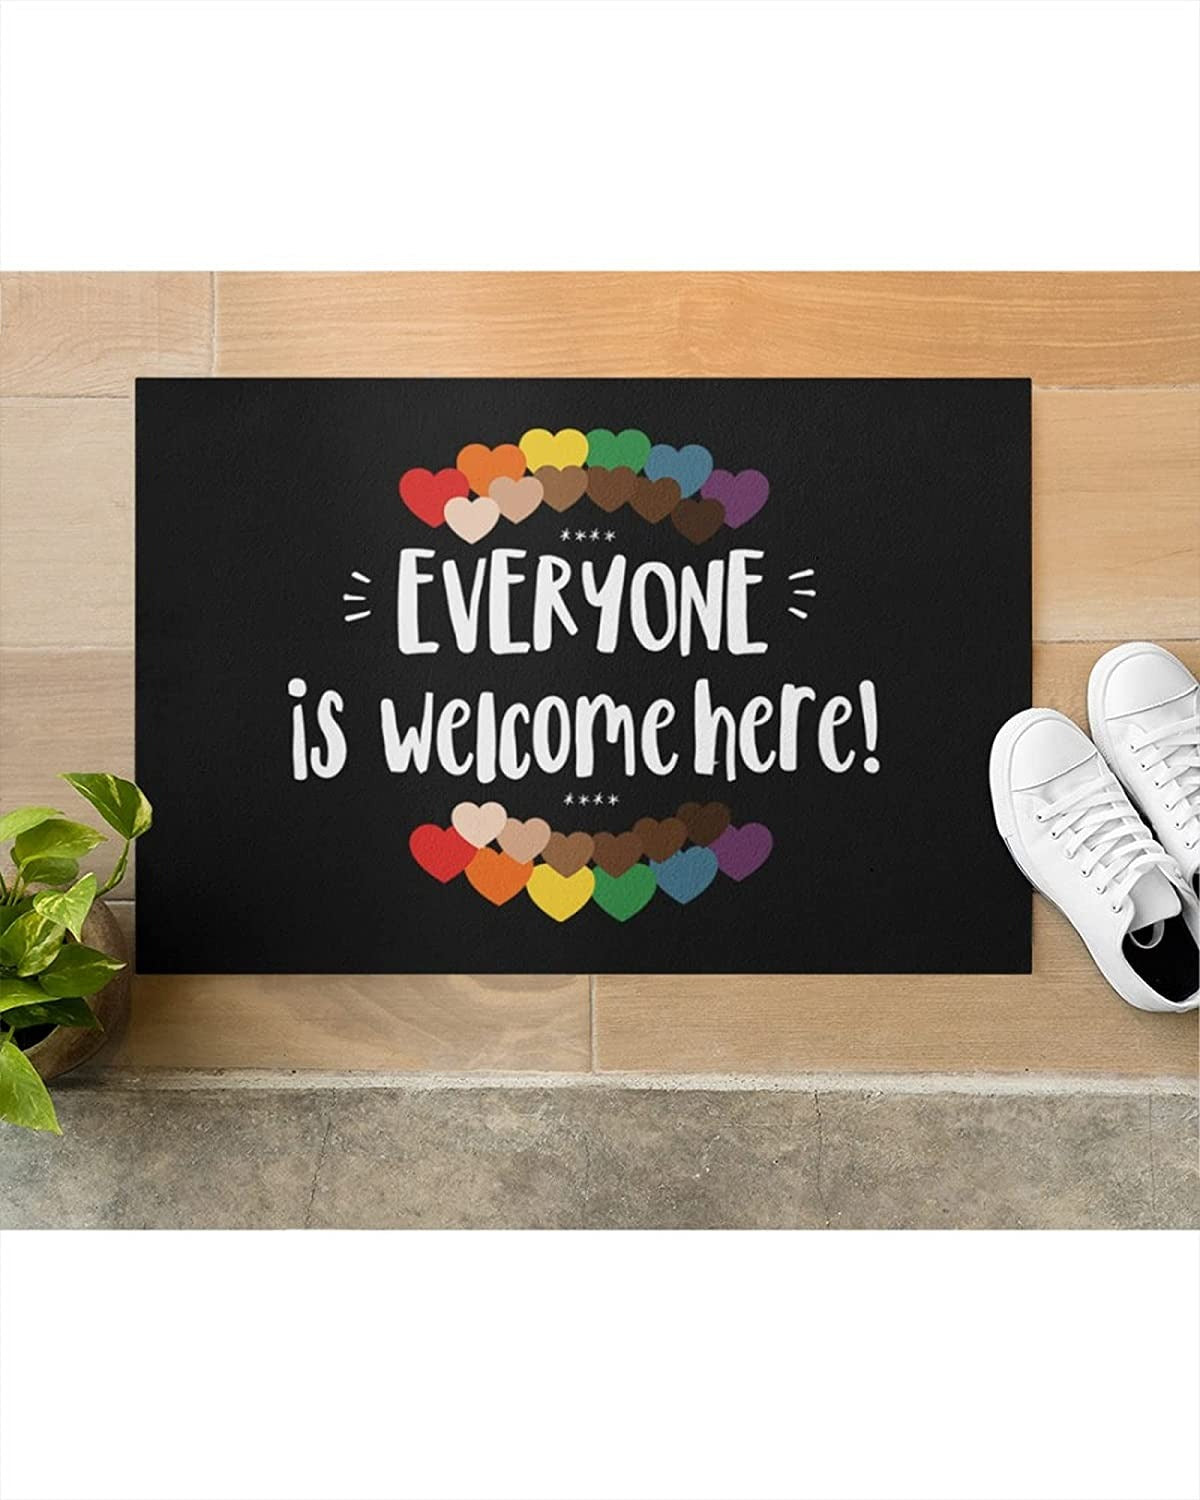 Equality Doormat Everyone Is Welcome Here Doormat Lgbt Pride Rainbow Black Pride Home Decor Doormat 18X30 Inch